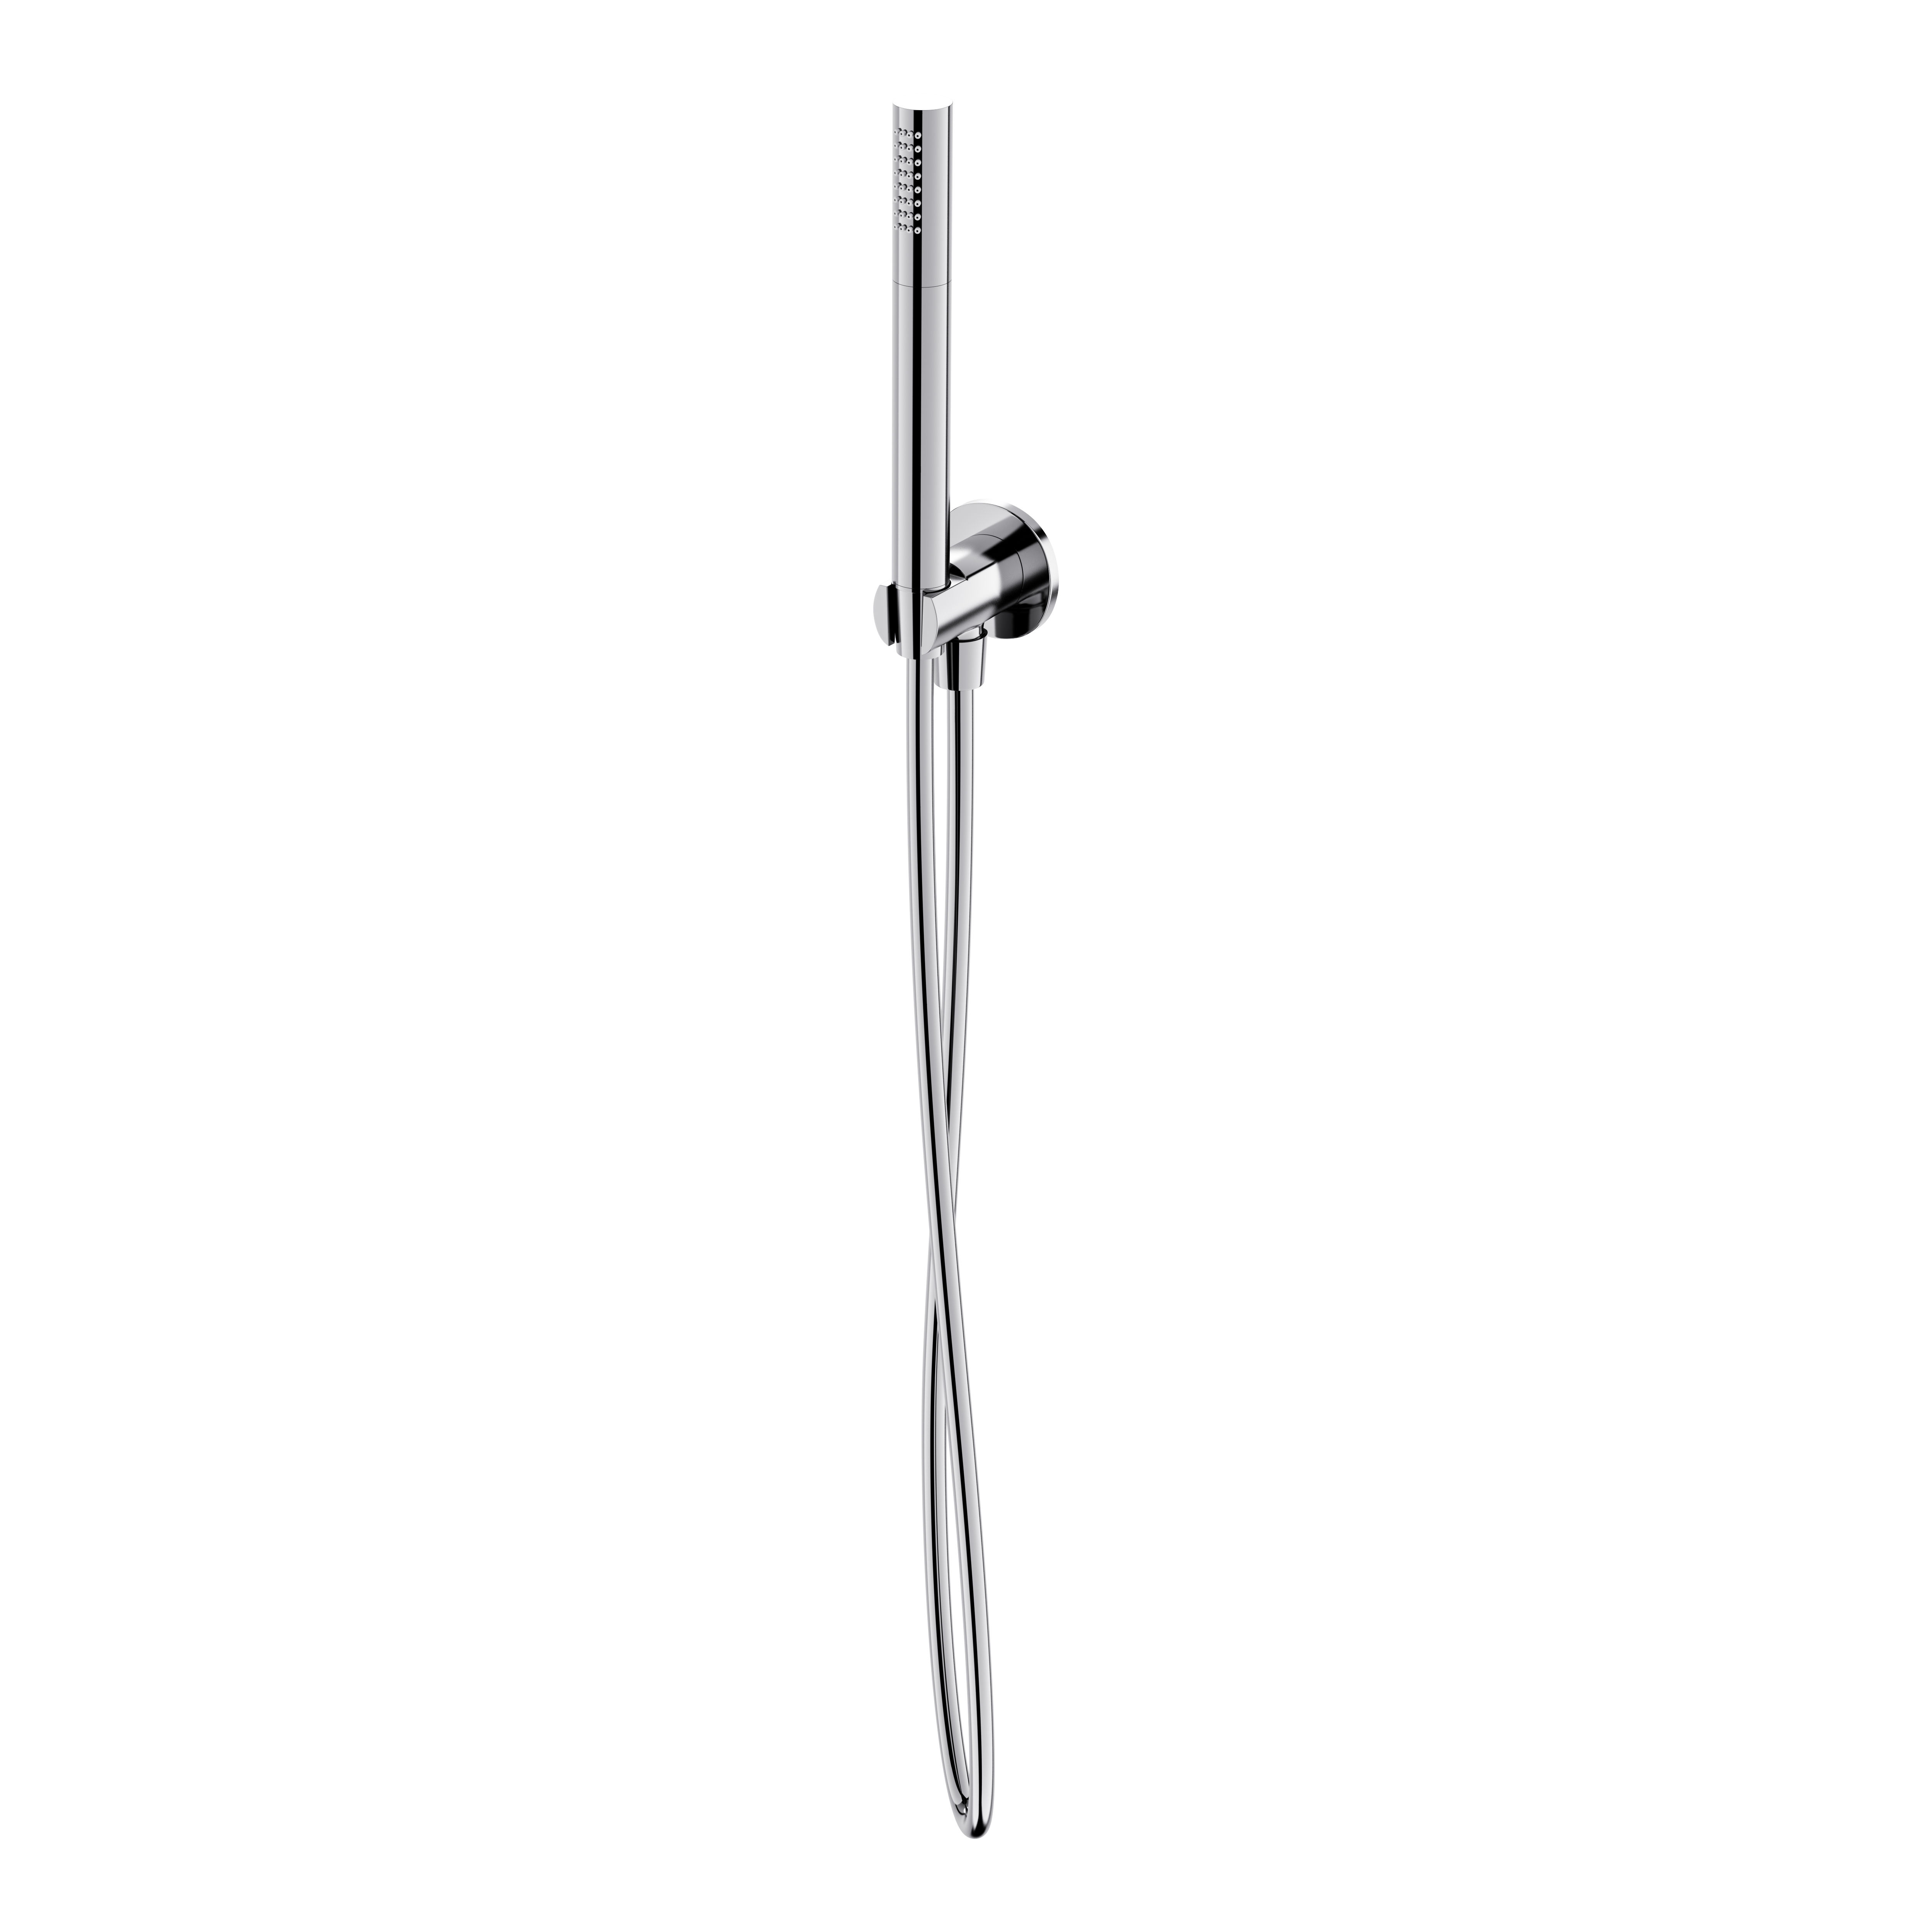 Zdjęcia - Zestaw prysznicowy Cersanit  punktowy  Inverto chrom połysk S951-70 